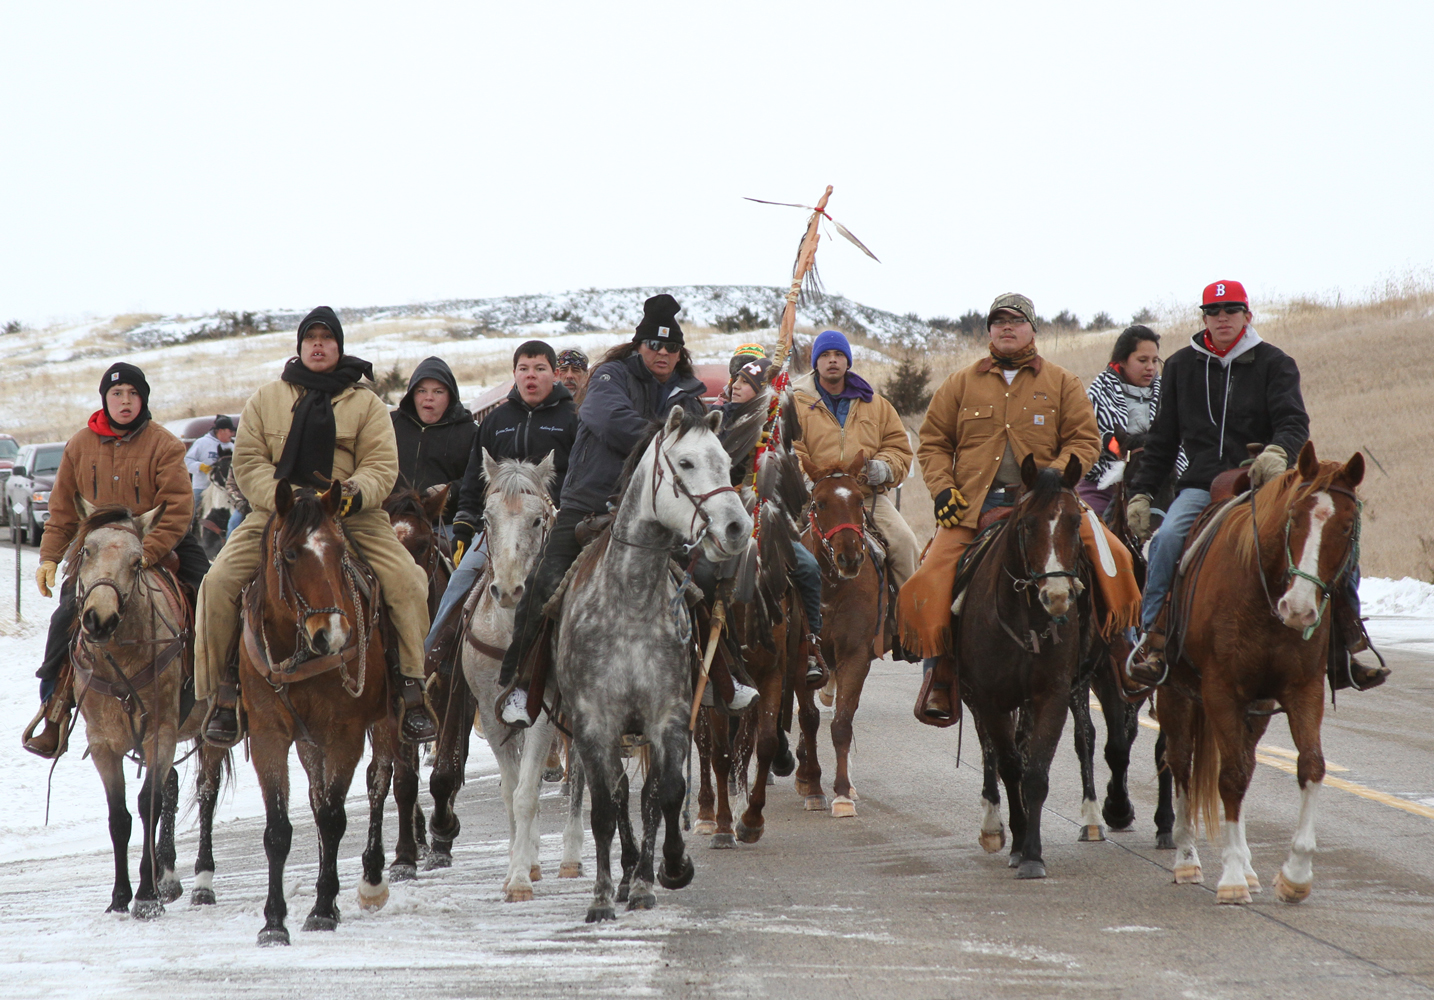 Riders on horseback journeyed from Lower Brule to Mankato, South Dakota for the Dakota 38 Memorial Ride.